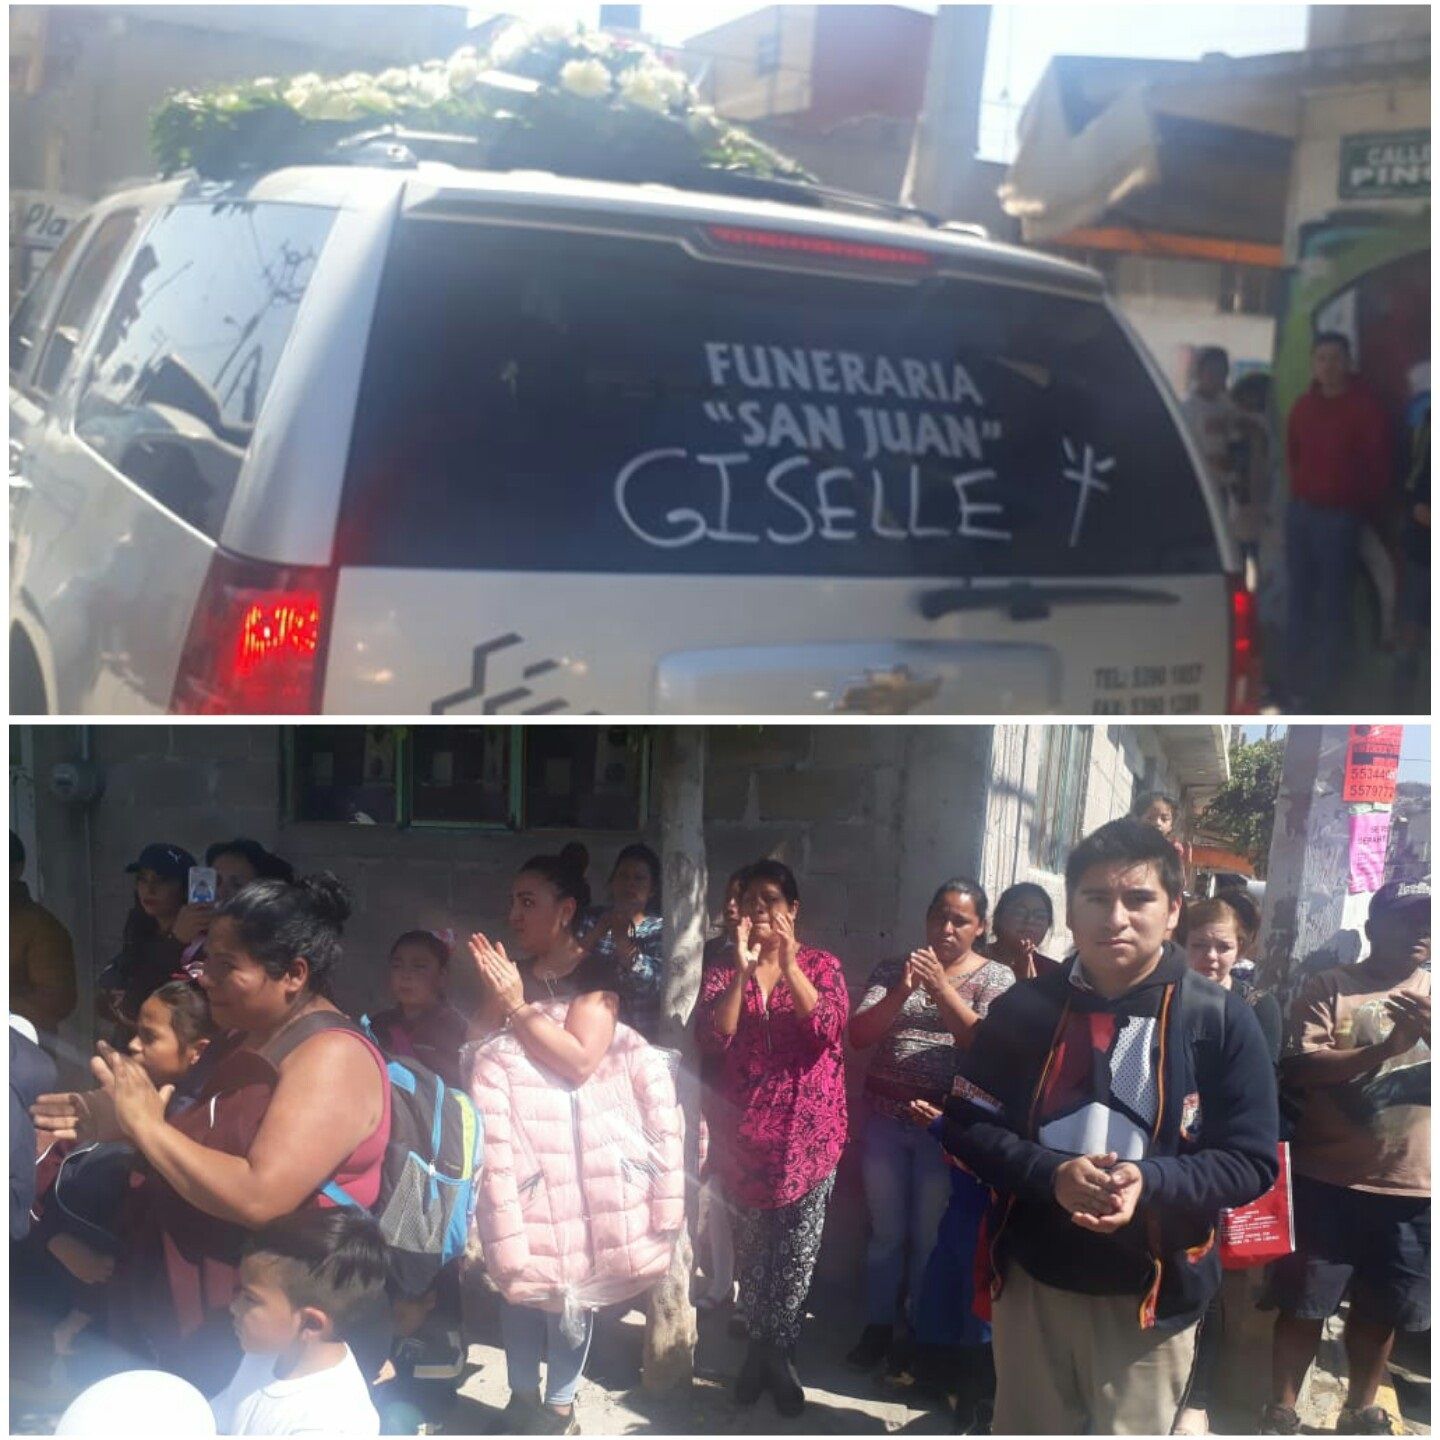 Con aplausos despiden a la niña Giselle en Chimalhuacan.